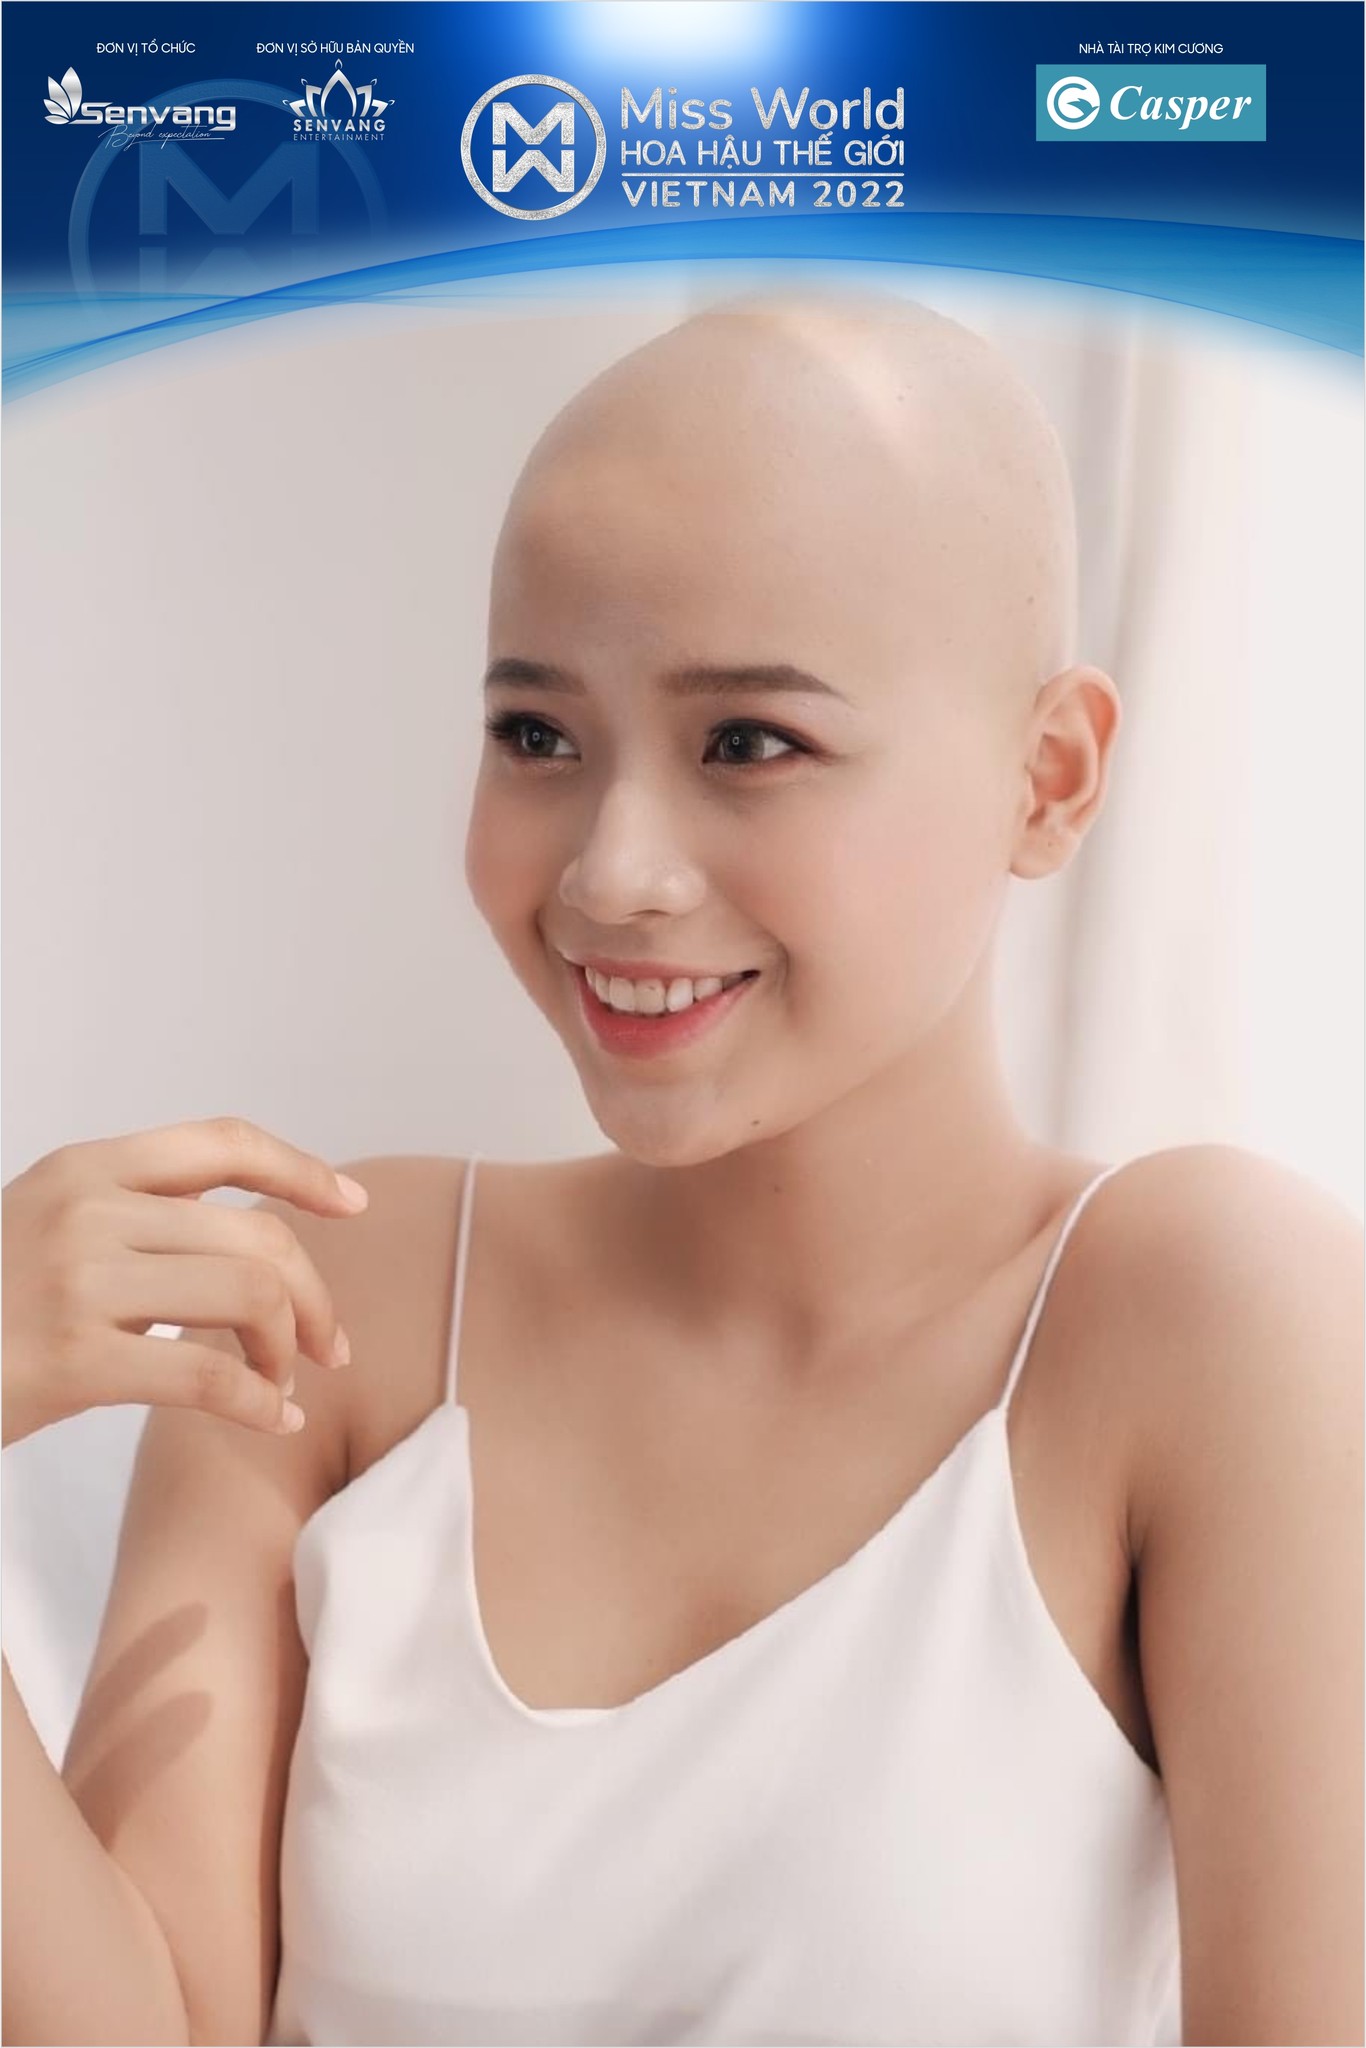 Hình ảnh trong giai đoạn chiến đấu với bệnh ung thư được Thủy Tiên gửi đến Miss World Vietnam